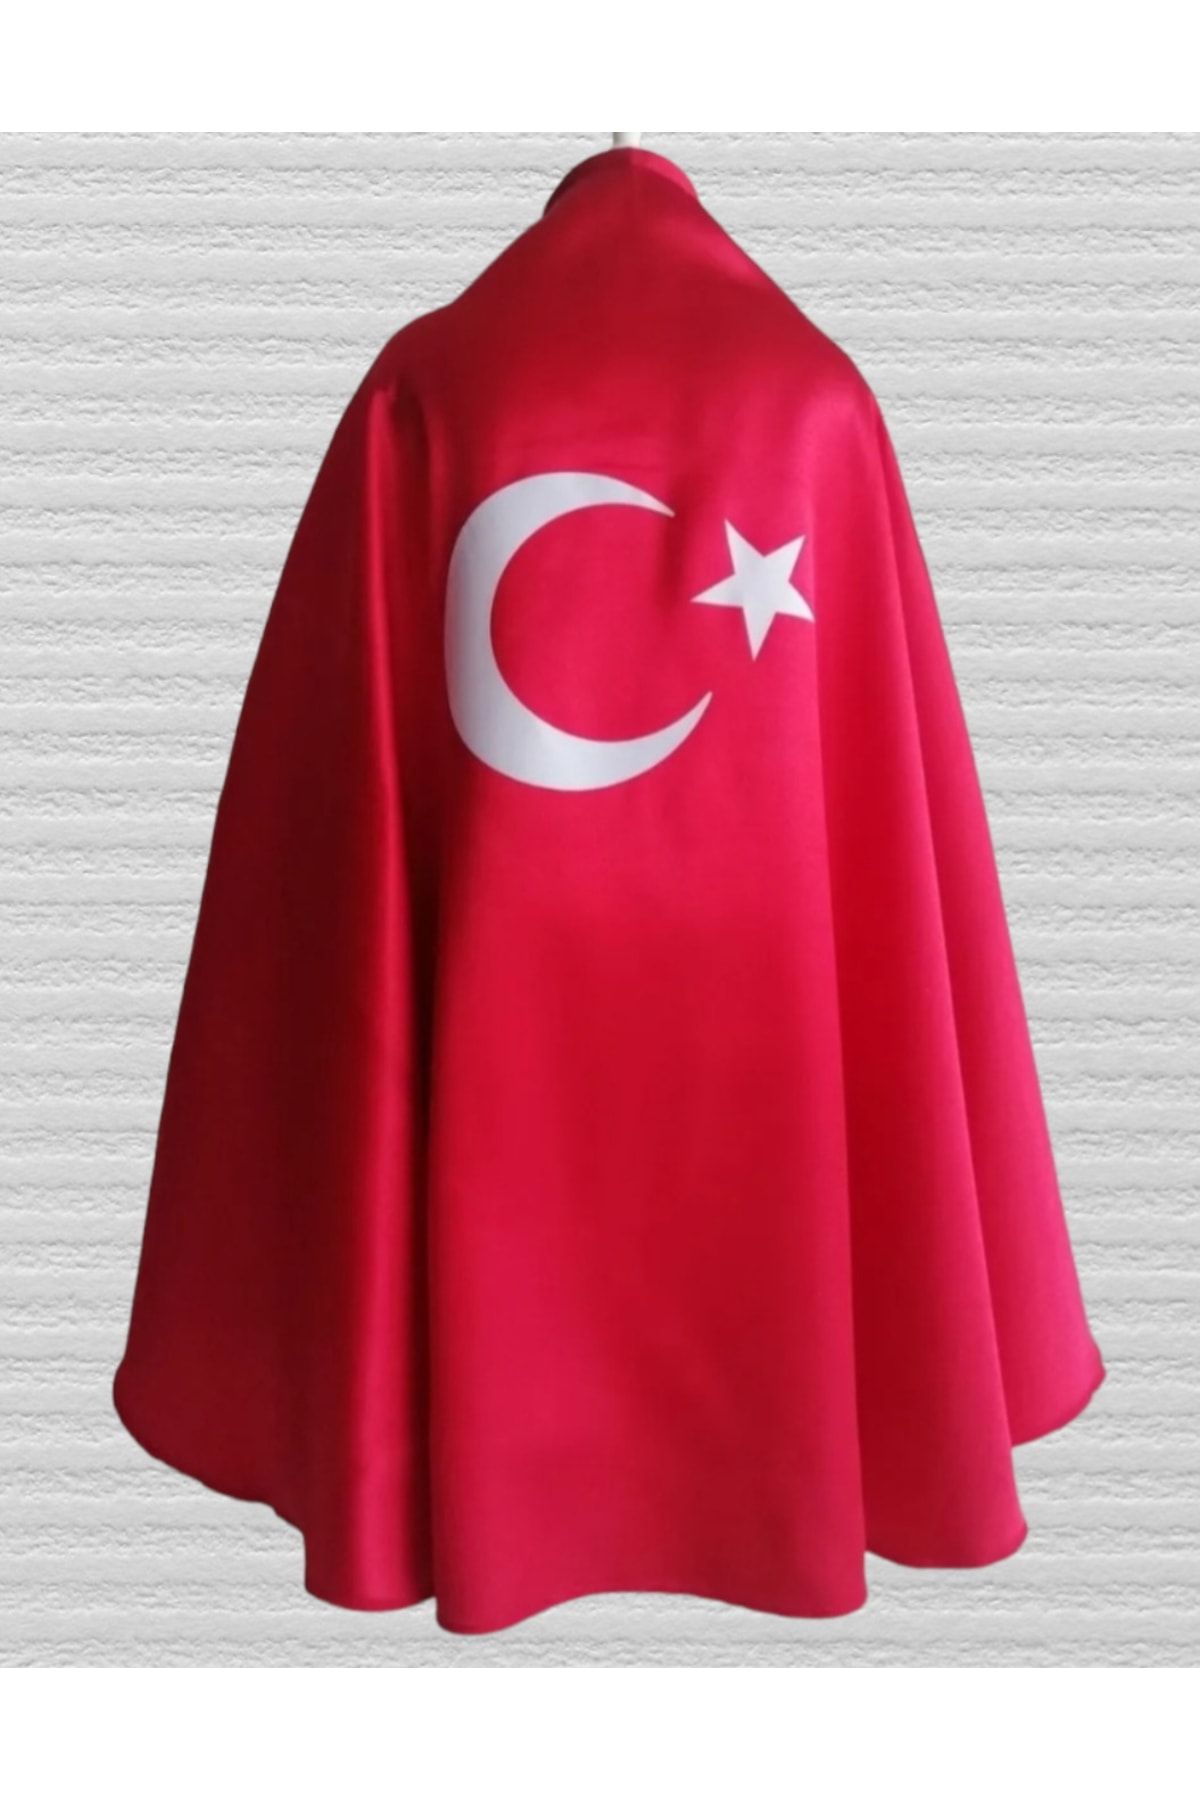 OTOTEDARİKOTOMATİKTEDARİKSİSTEMİ 23 Nisan Özel Türk Bayraklı Kırmızı Gösteri Pelerini